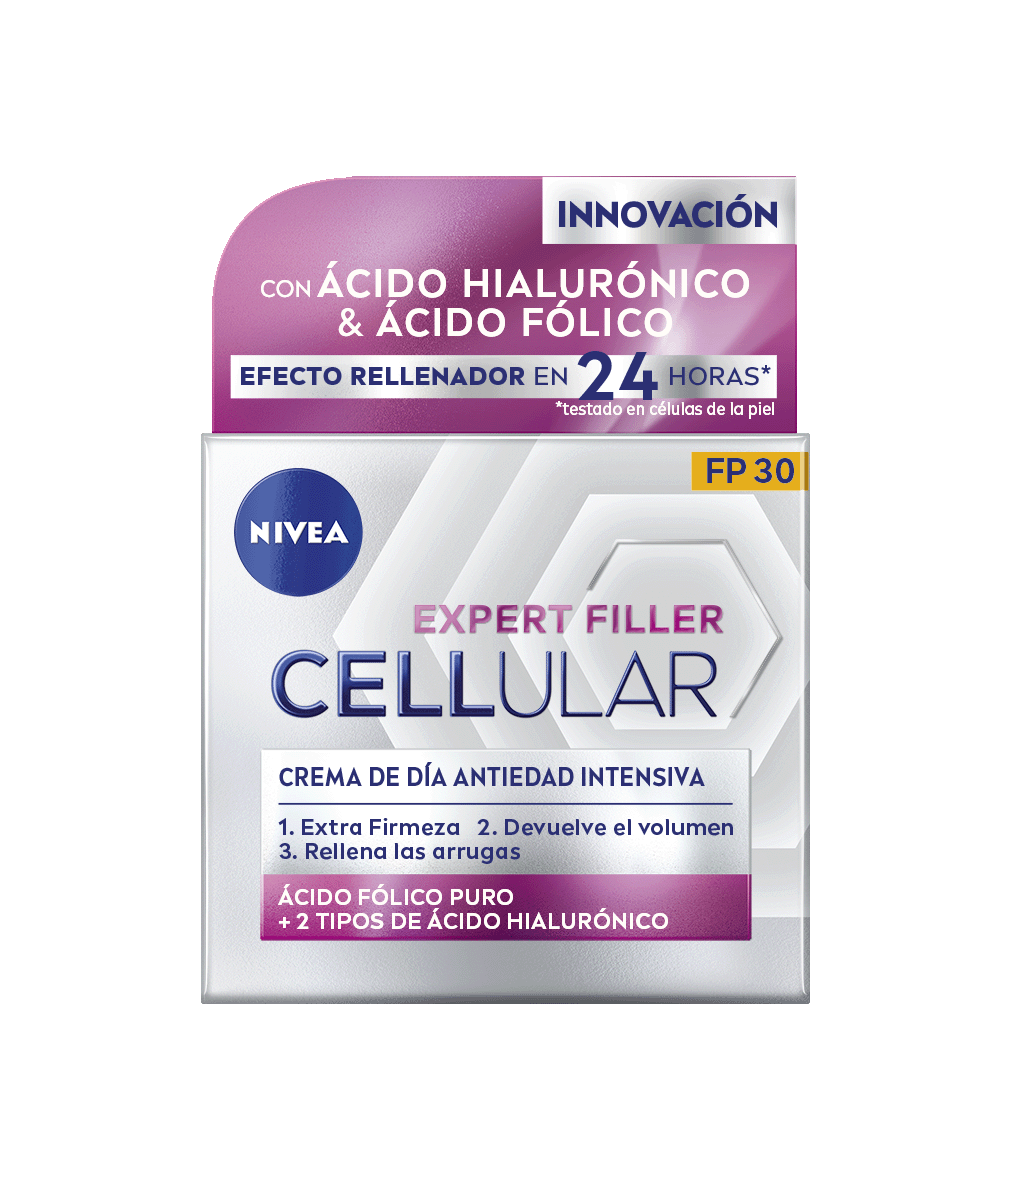 NIVEA Cellular Expert Filler Crema de Día FP30